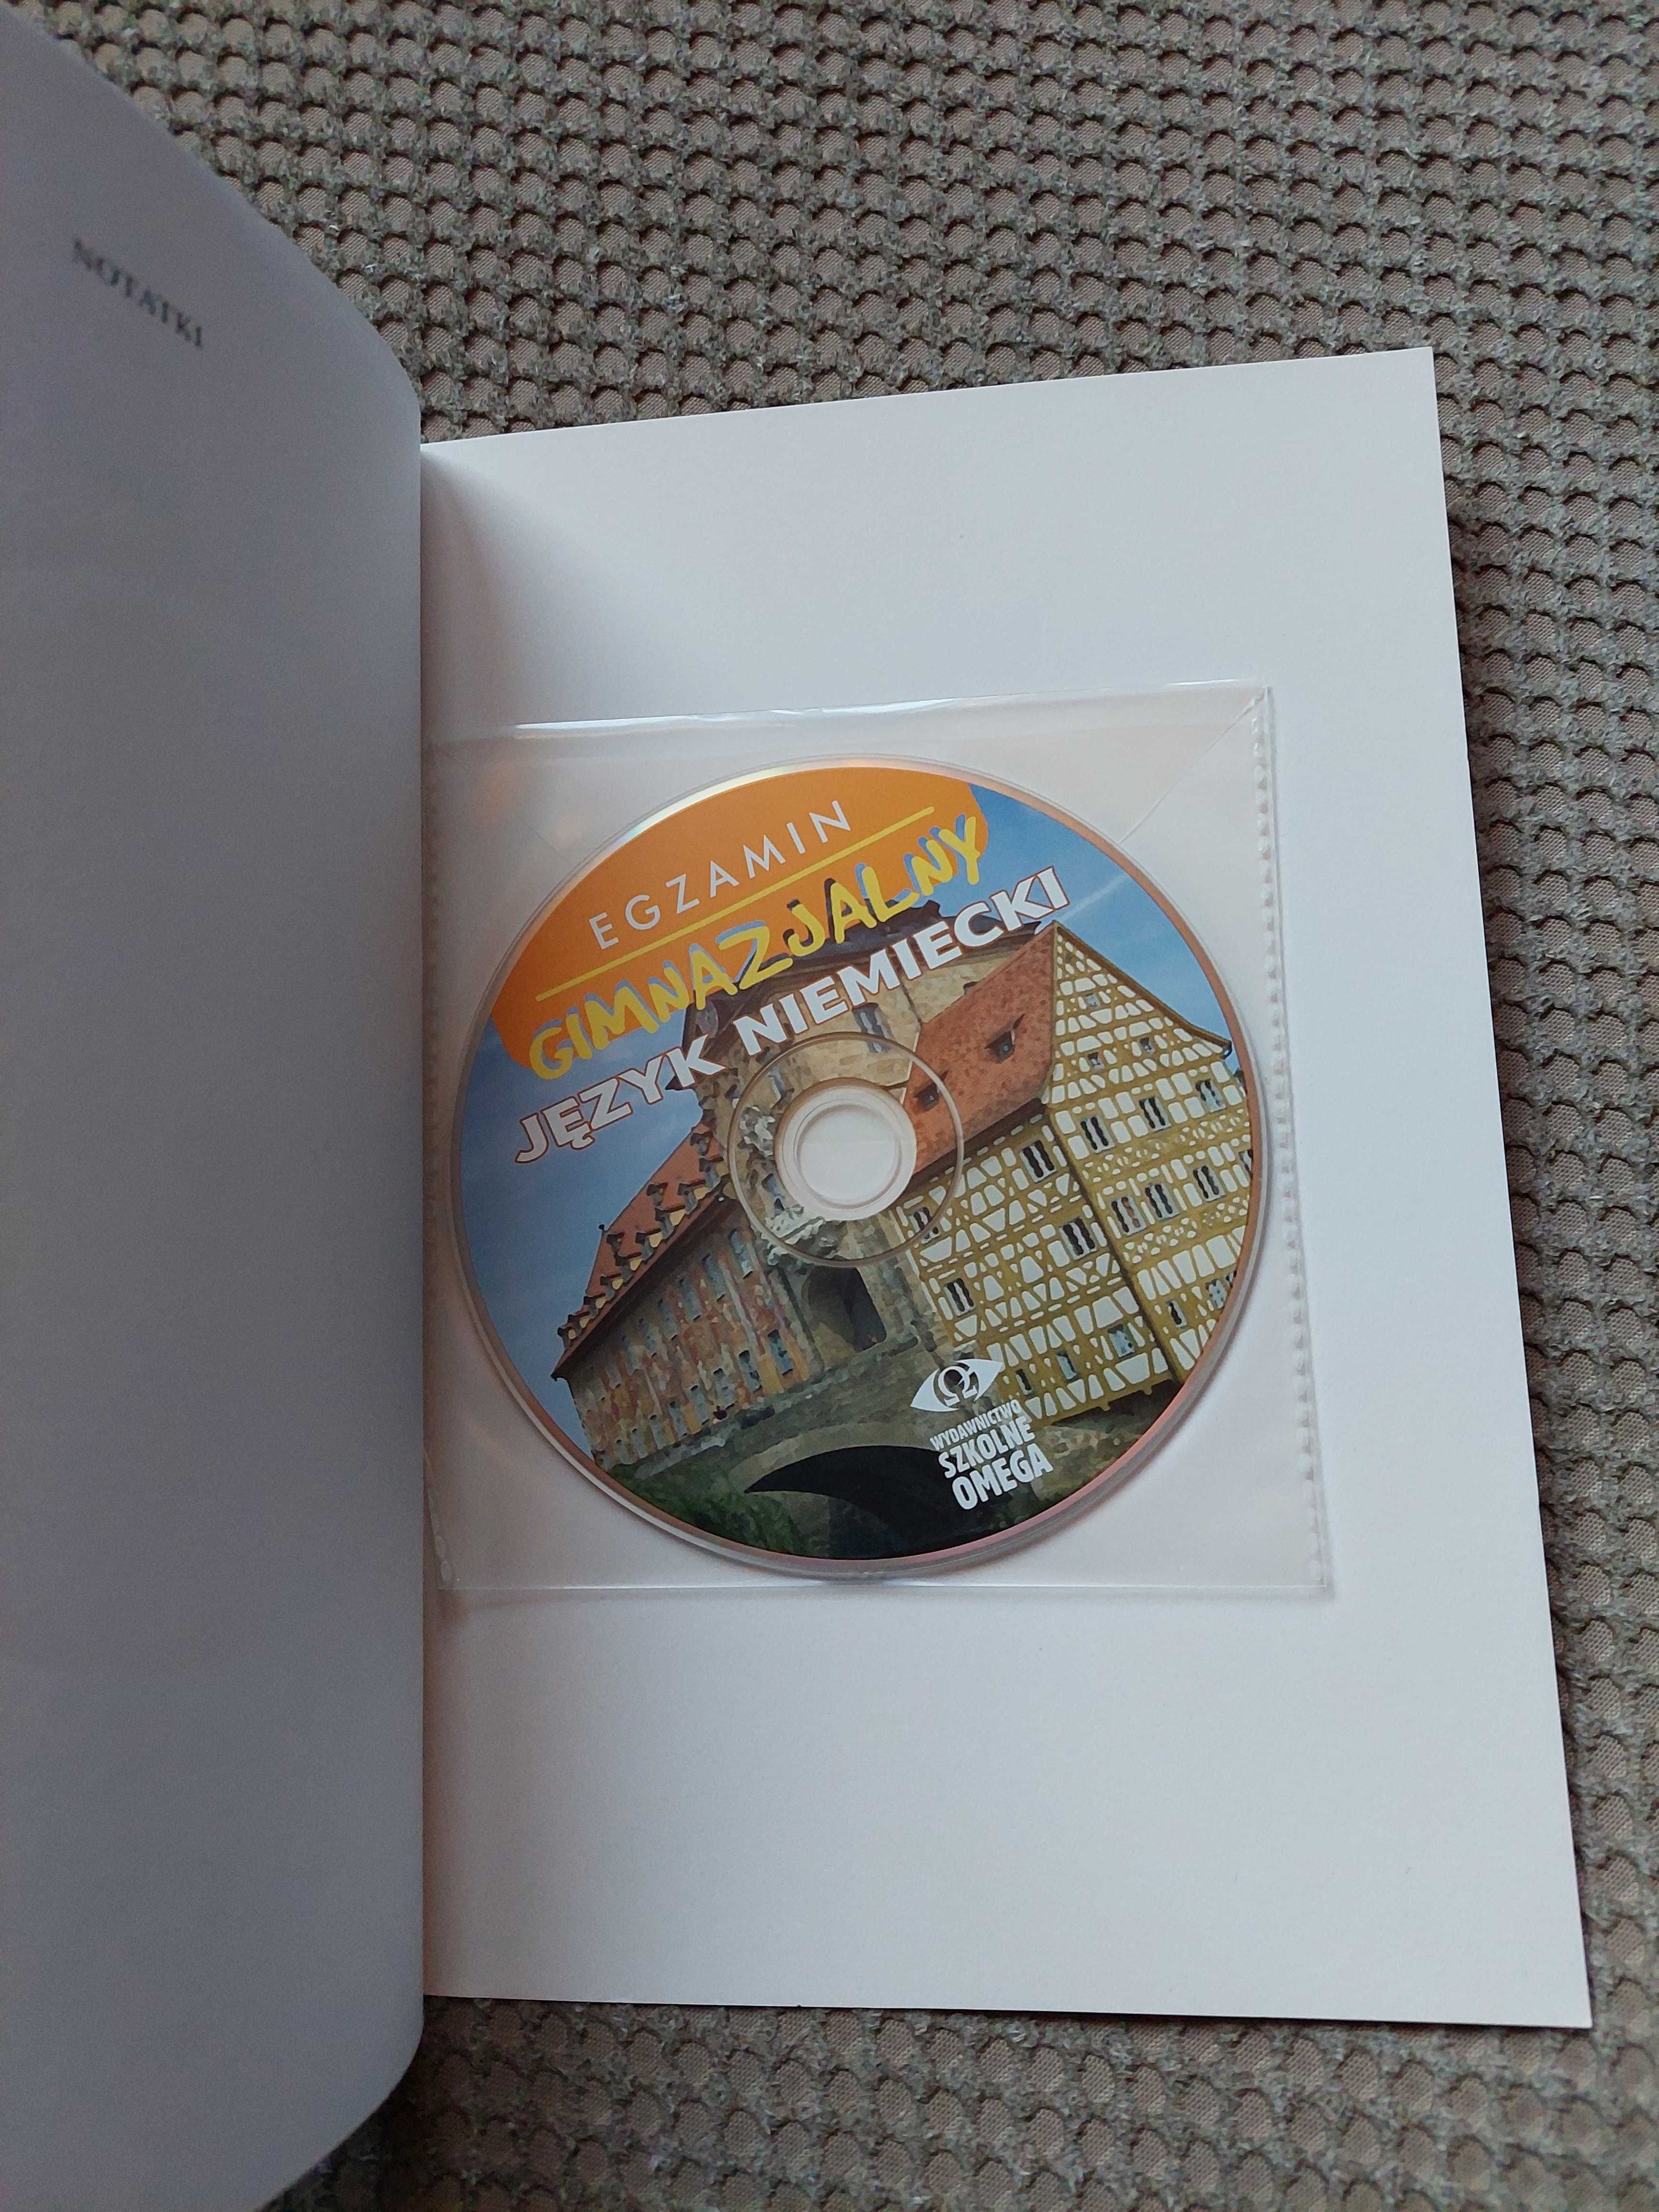 książka z zadaniami+płyta CD+aneks "Język niemiecki"